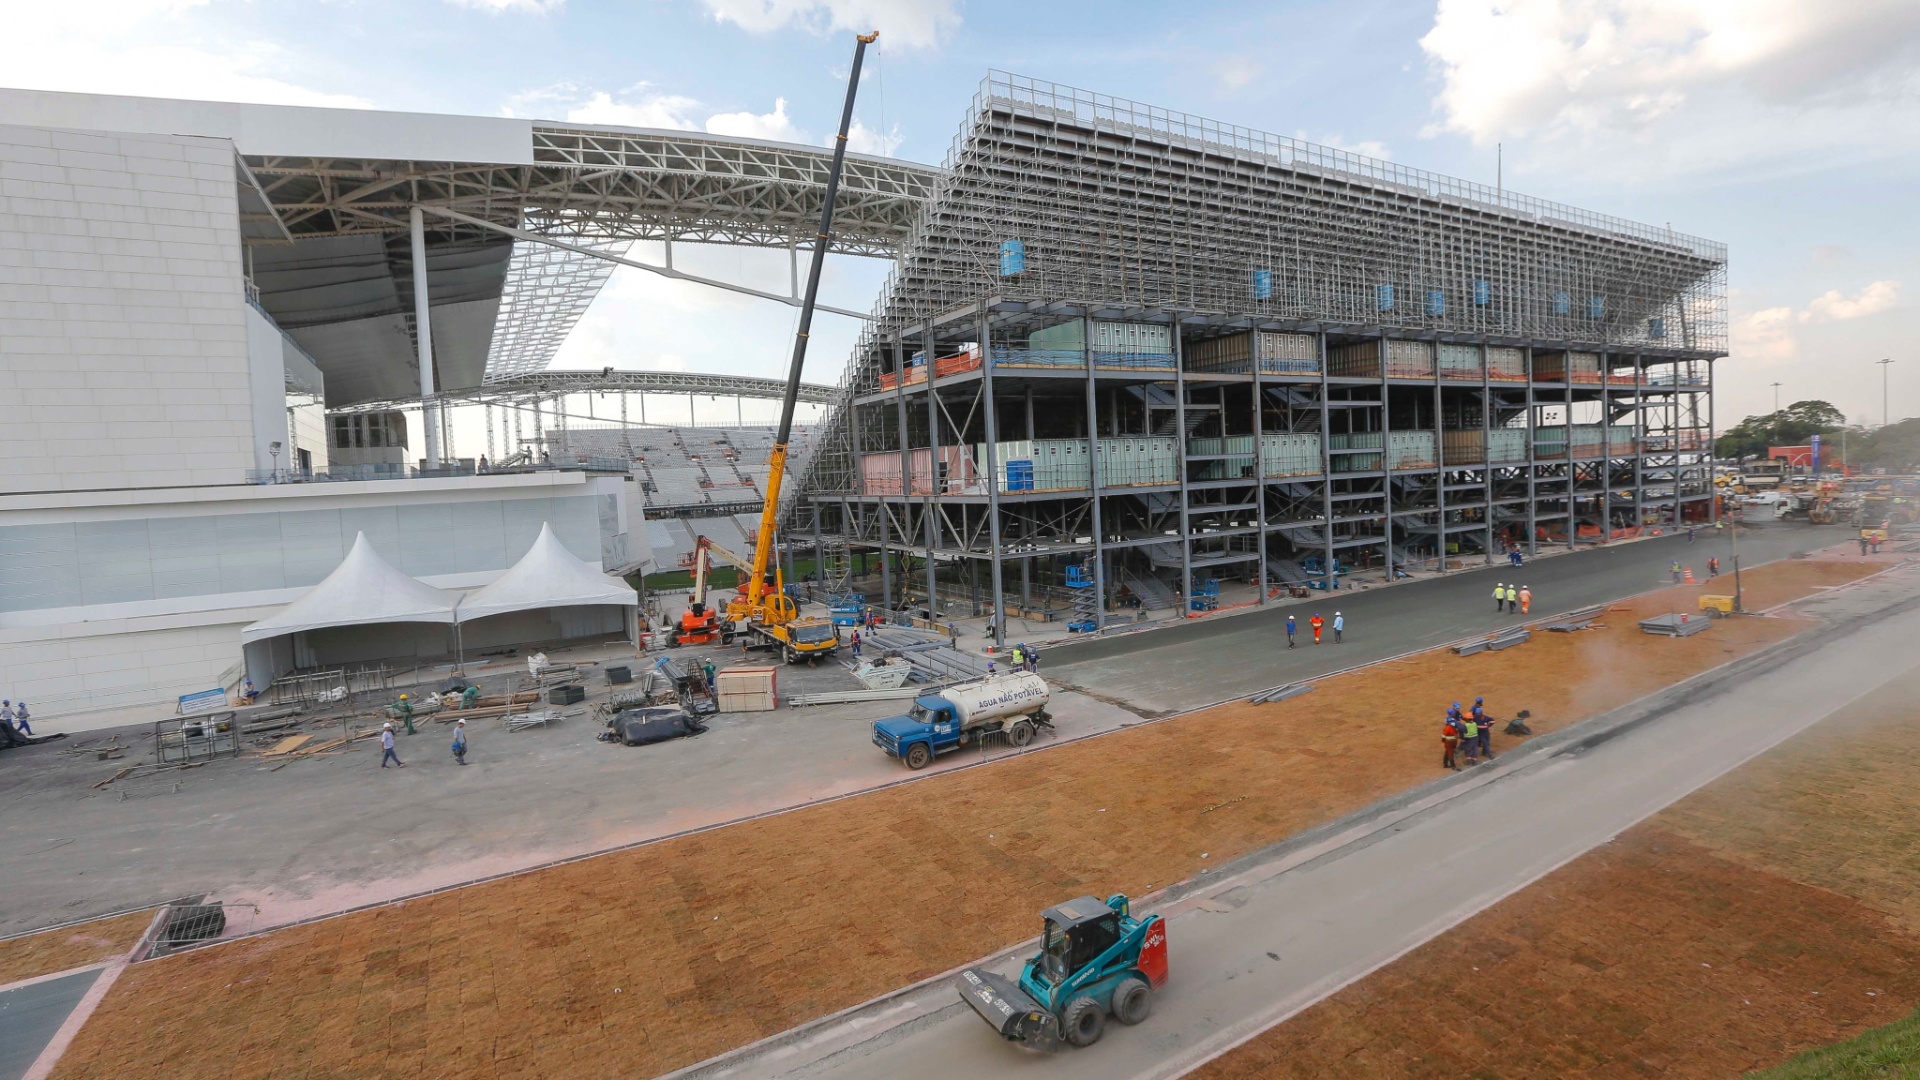 08.05.14 - Obras do Itaquerão no dia da visita da presidente Dilma Rousseff ao estádio de abertura da Copa do Mundo